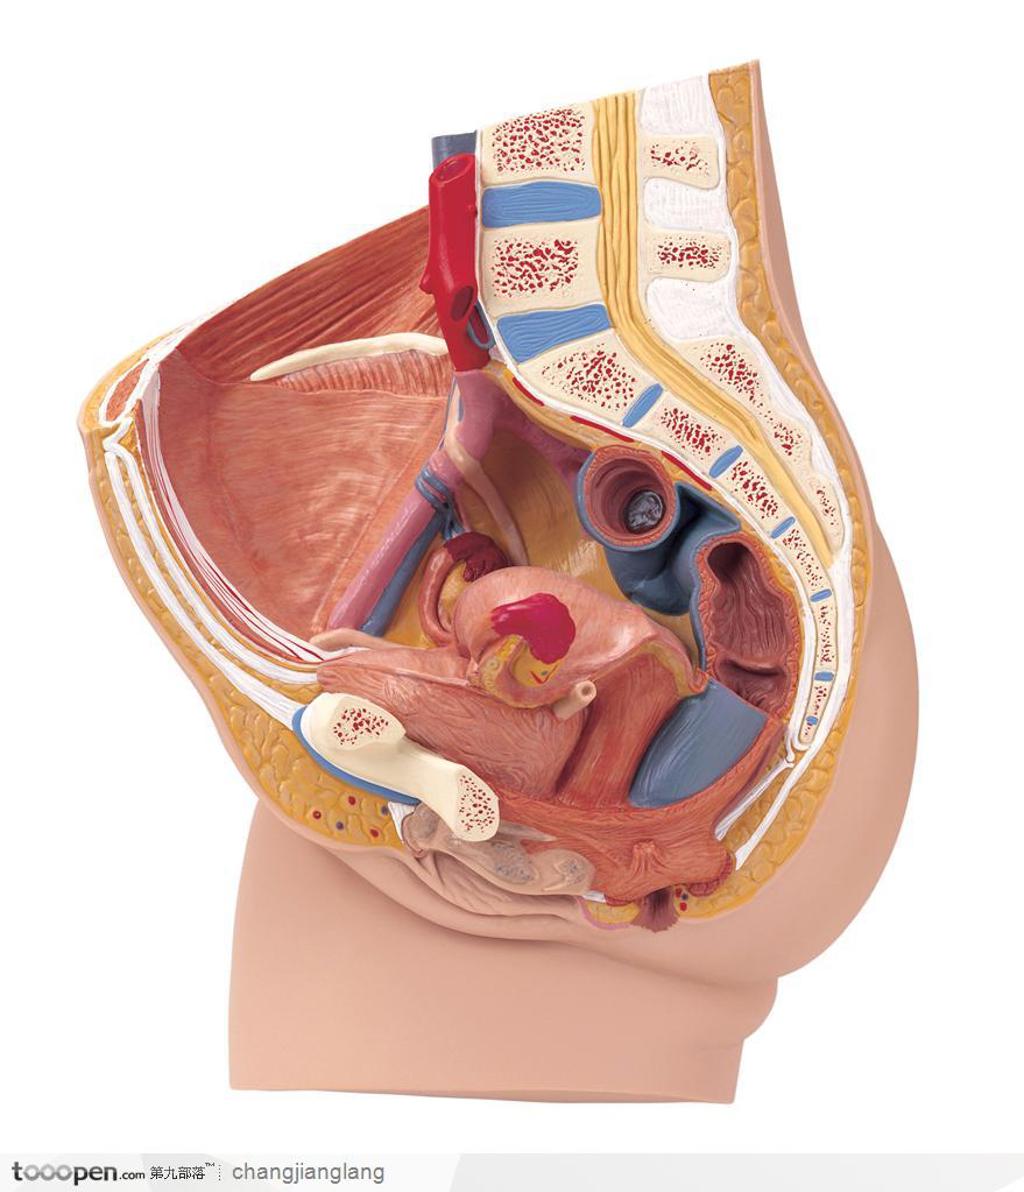 人体解剖——女性生殖器官内部结构